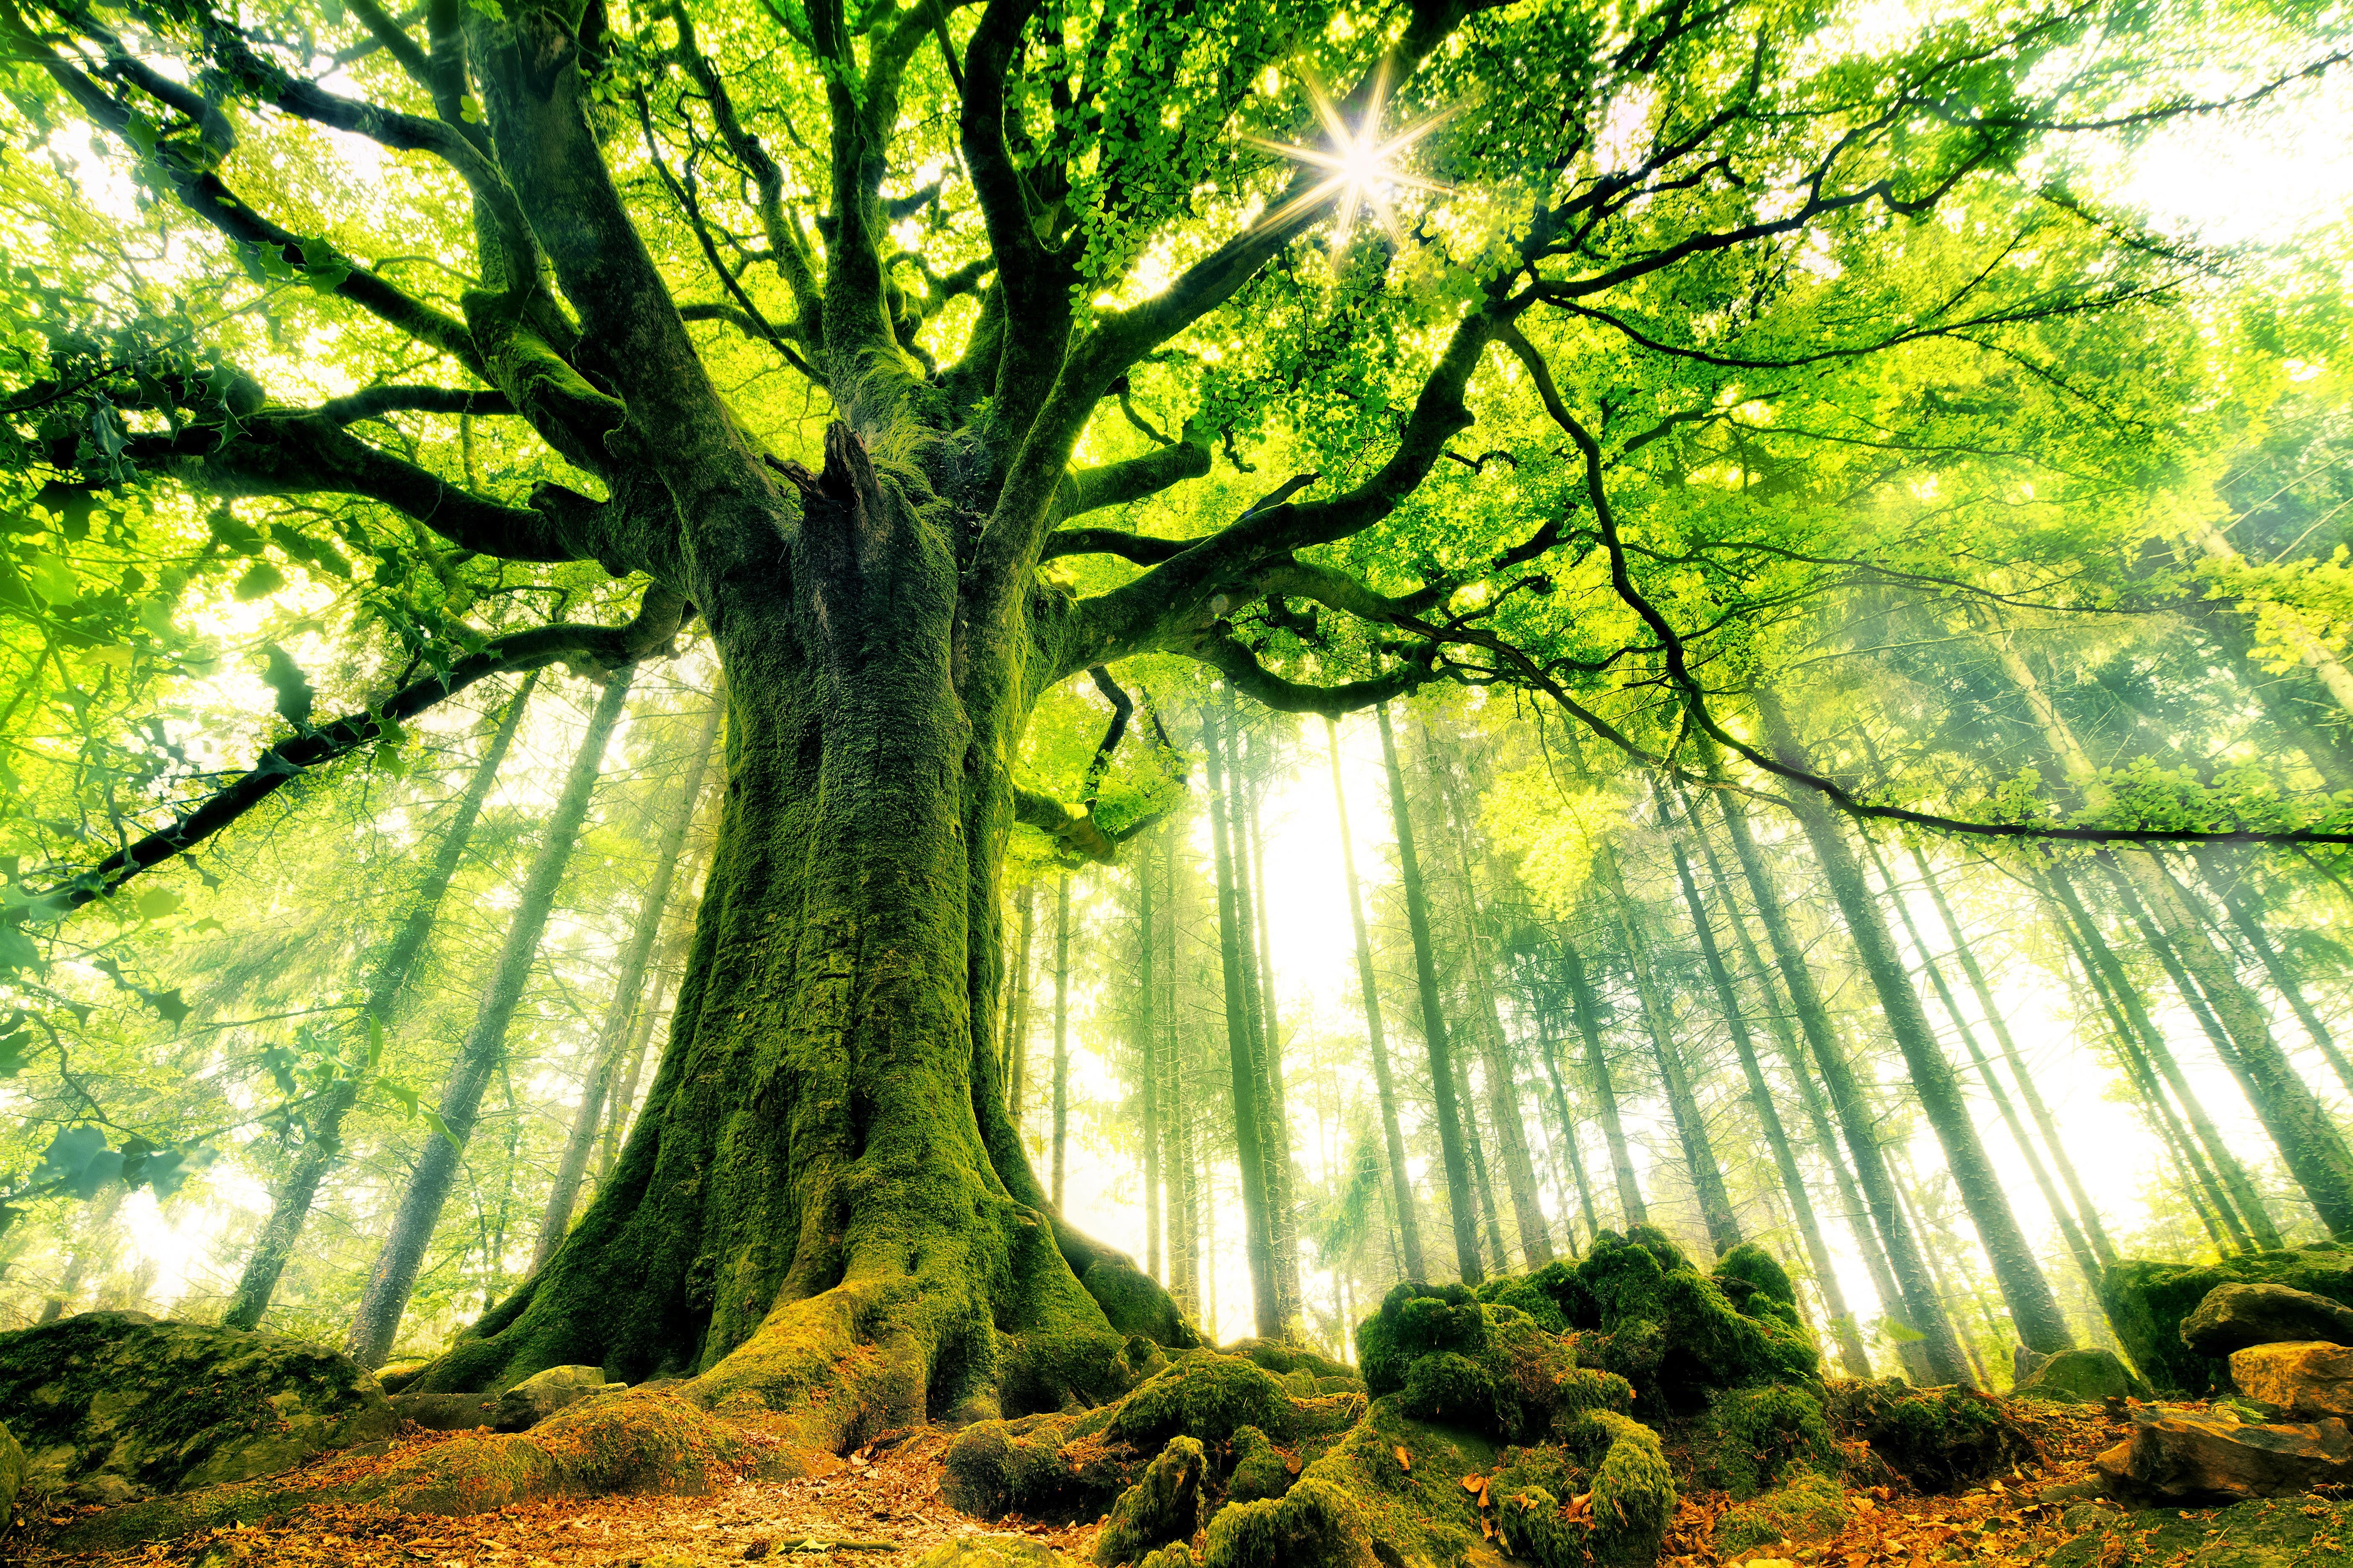 Условия жизни деревьев. Броселианд Франция. Лес Броселианд. Колдовской лес Броселианд. Лес Броселианд Франция фото.